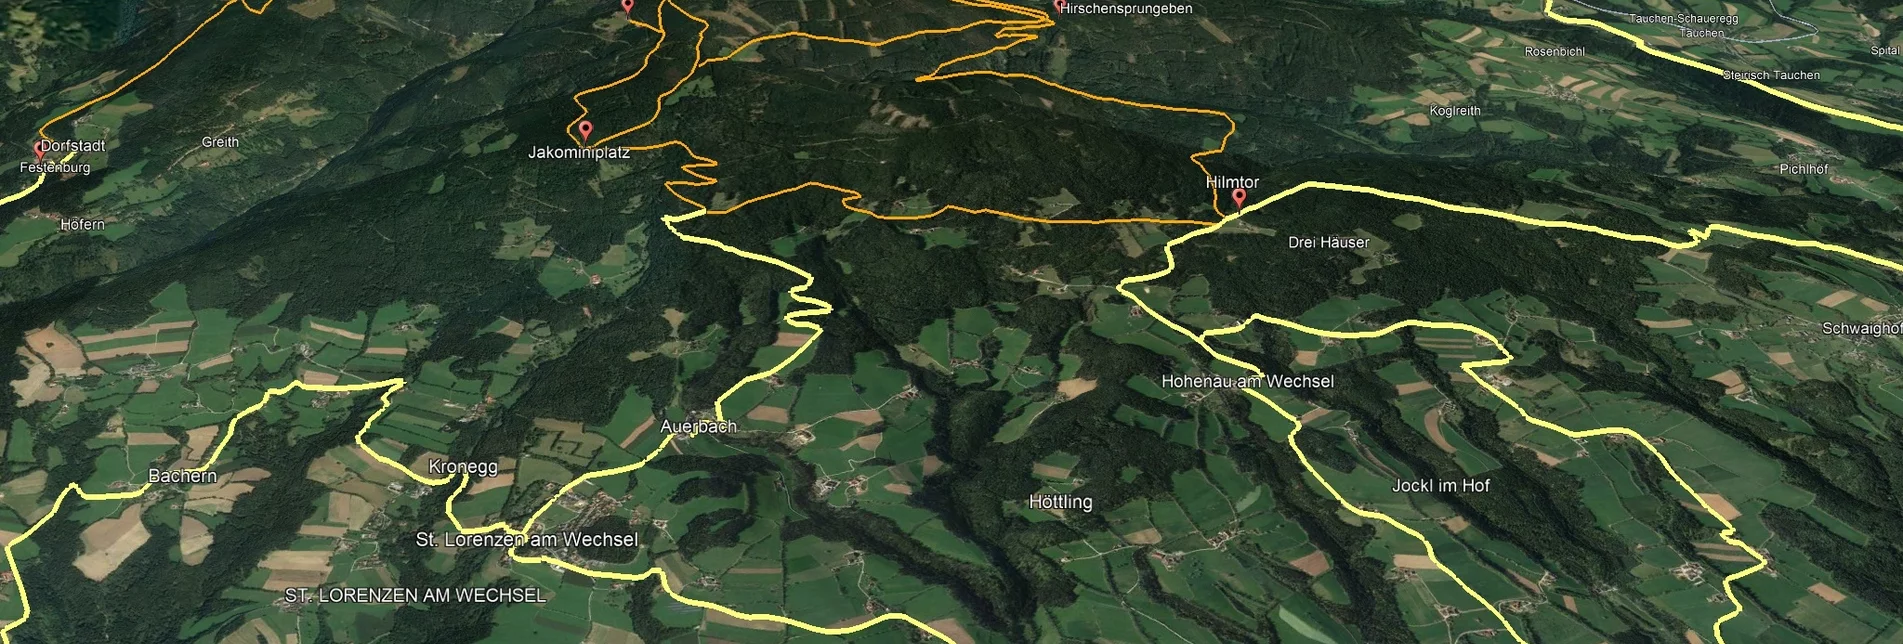 Mountain Biking Styrian Wexl Trails - feeder road from Bruck an der Lafnitz to St. Lorenzen am Wechsel (connection) - Touren-Impression #1 | © Verein Tourismusentwicklung Steirischer Wechsel